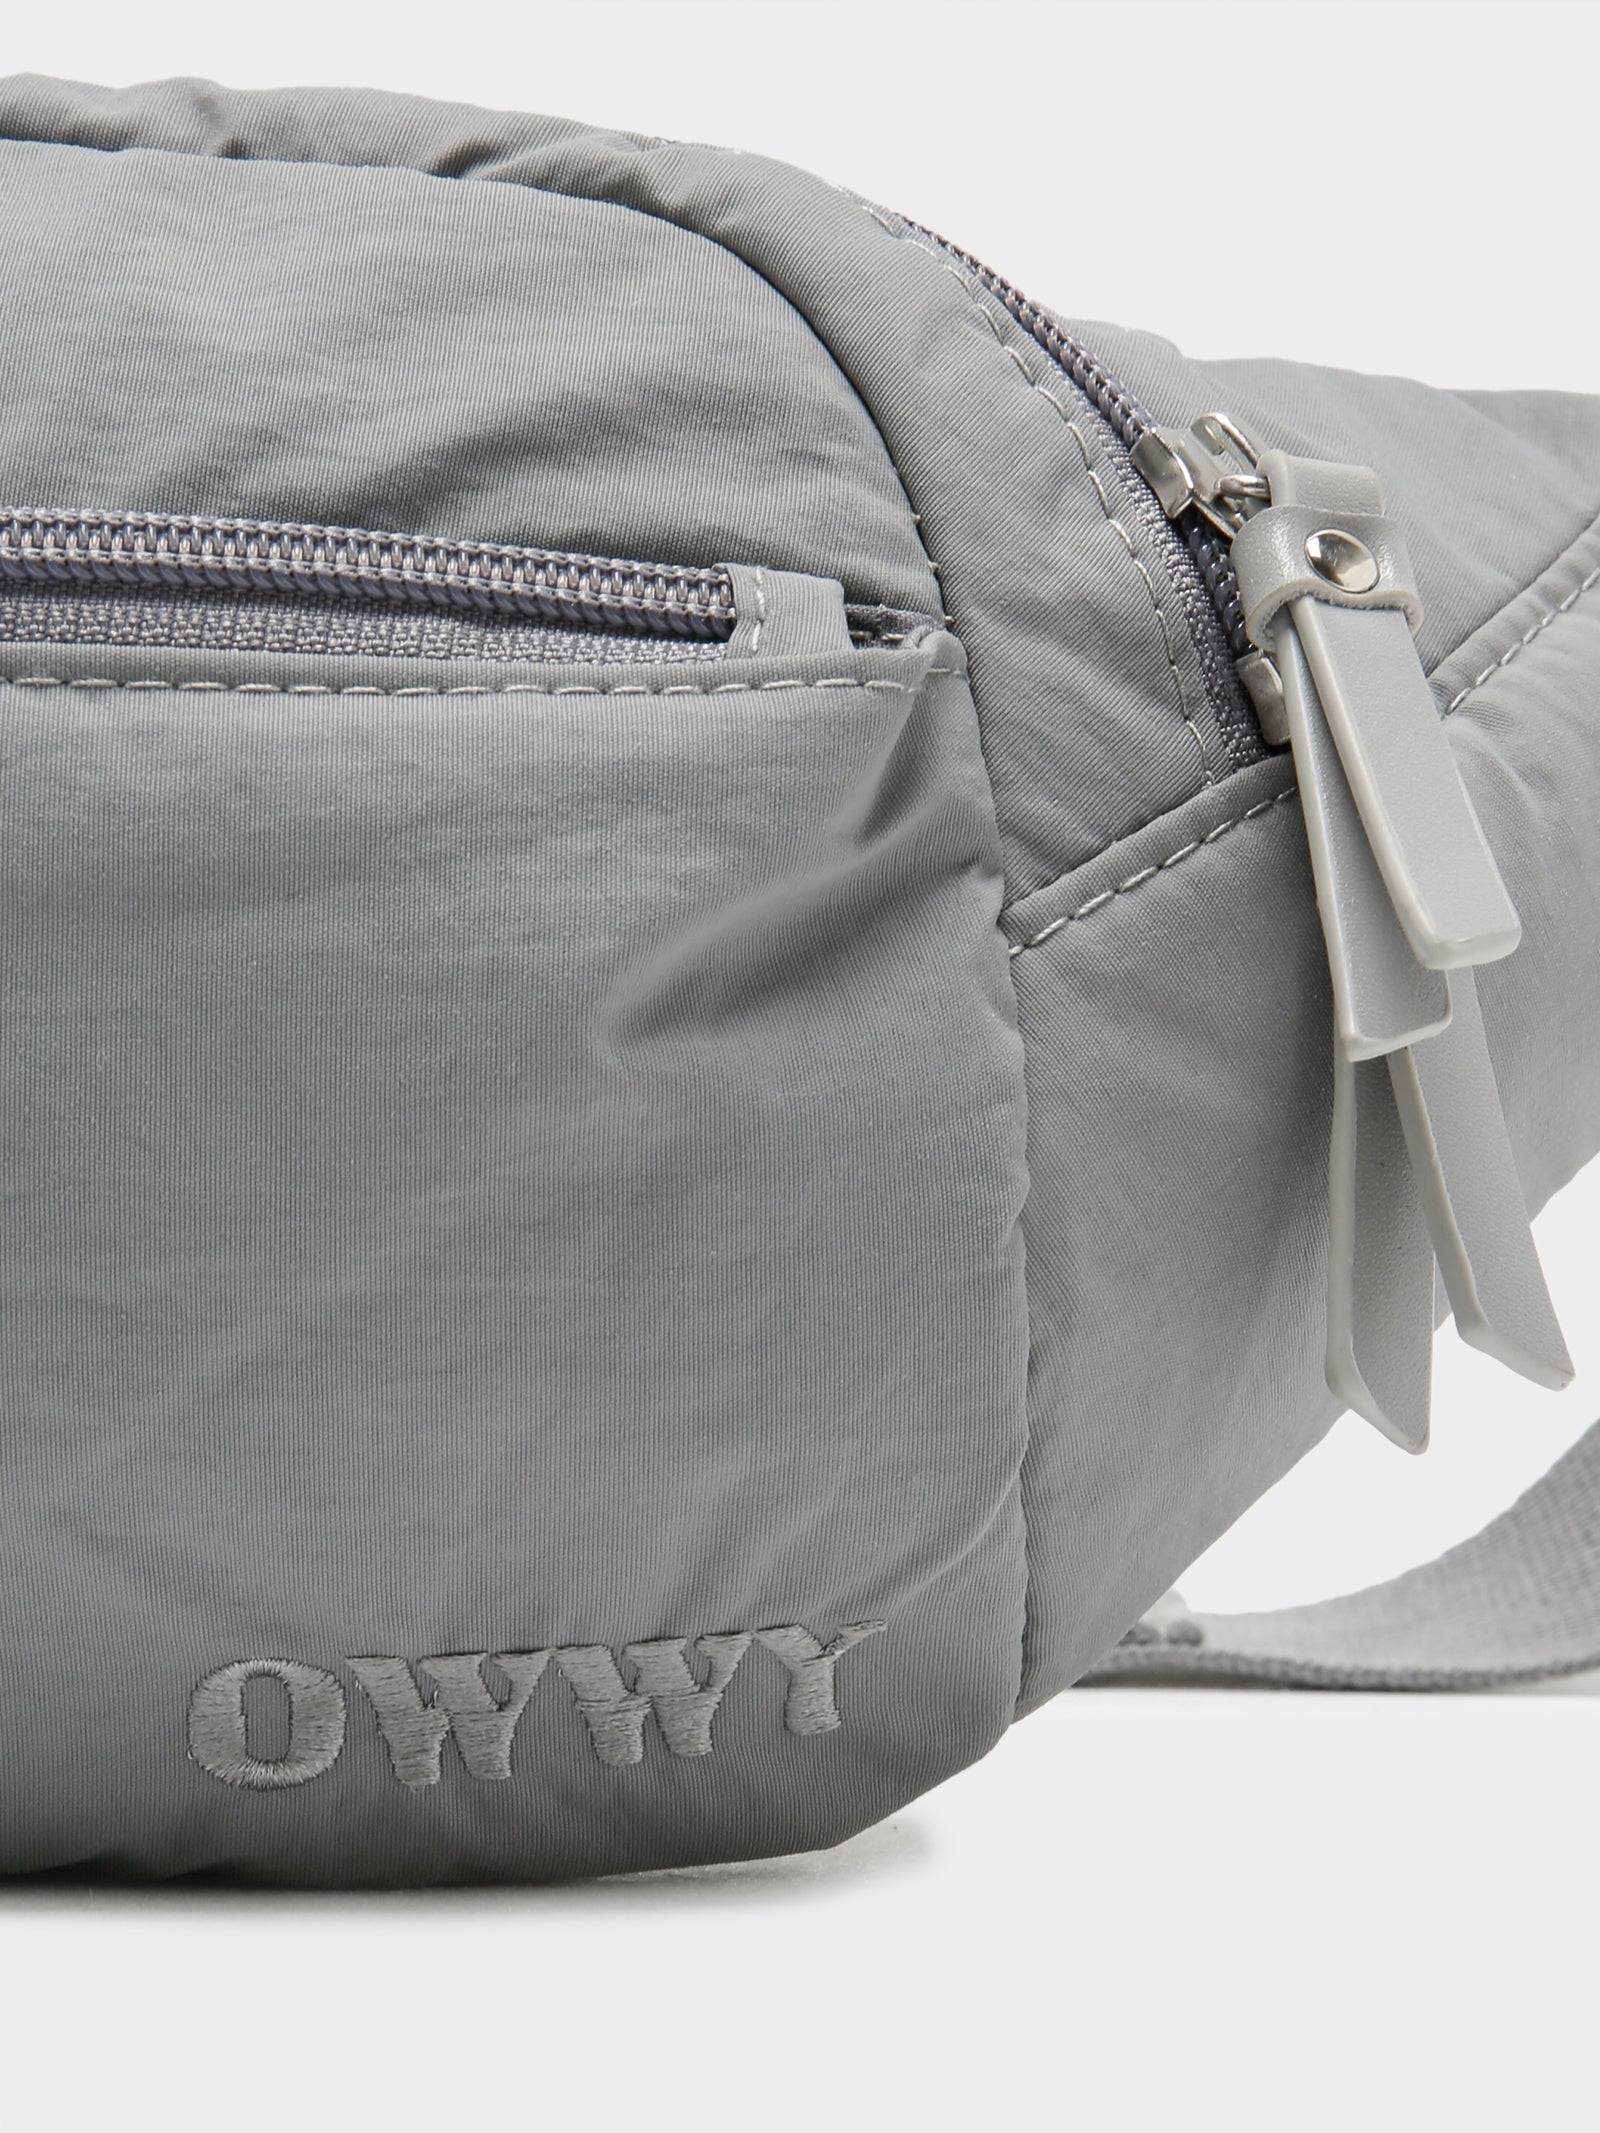 OWWY Belt Bag in Grey